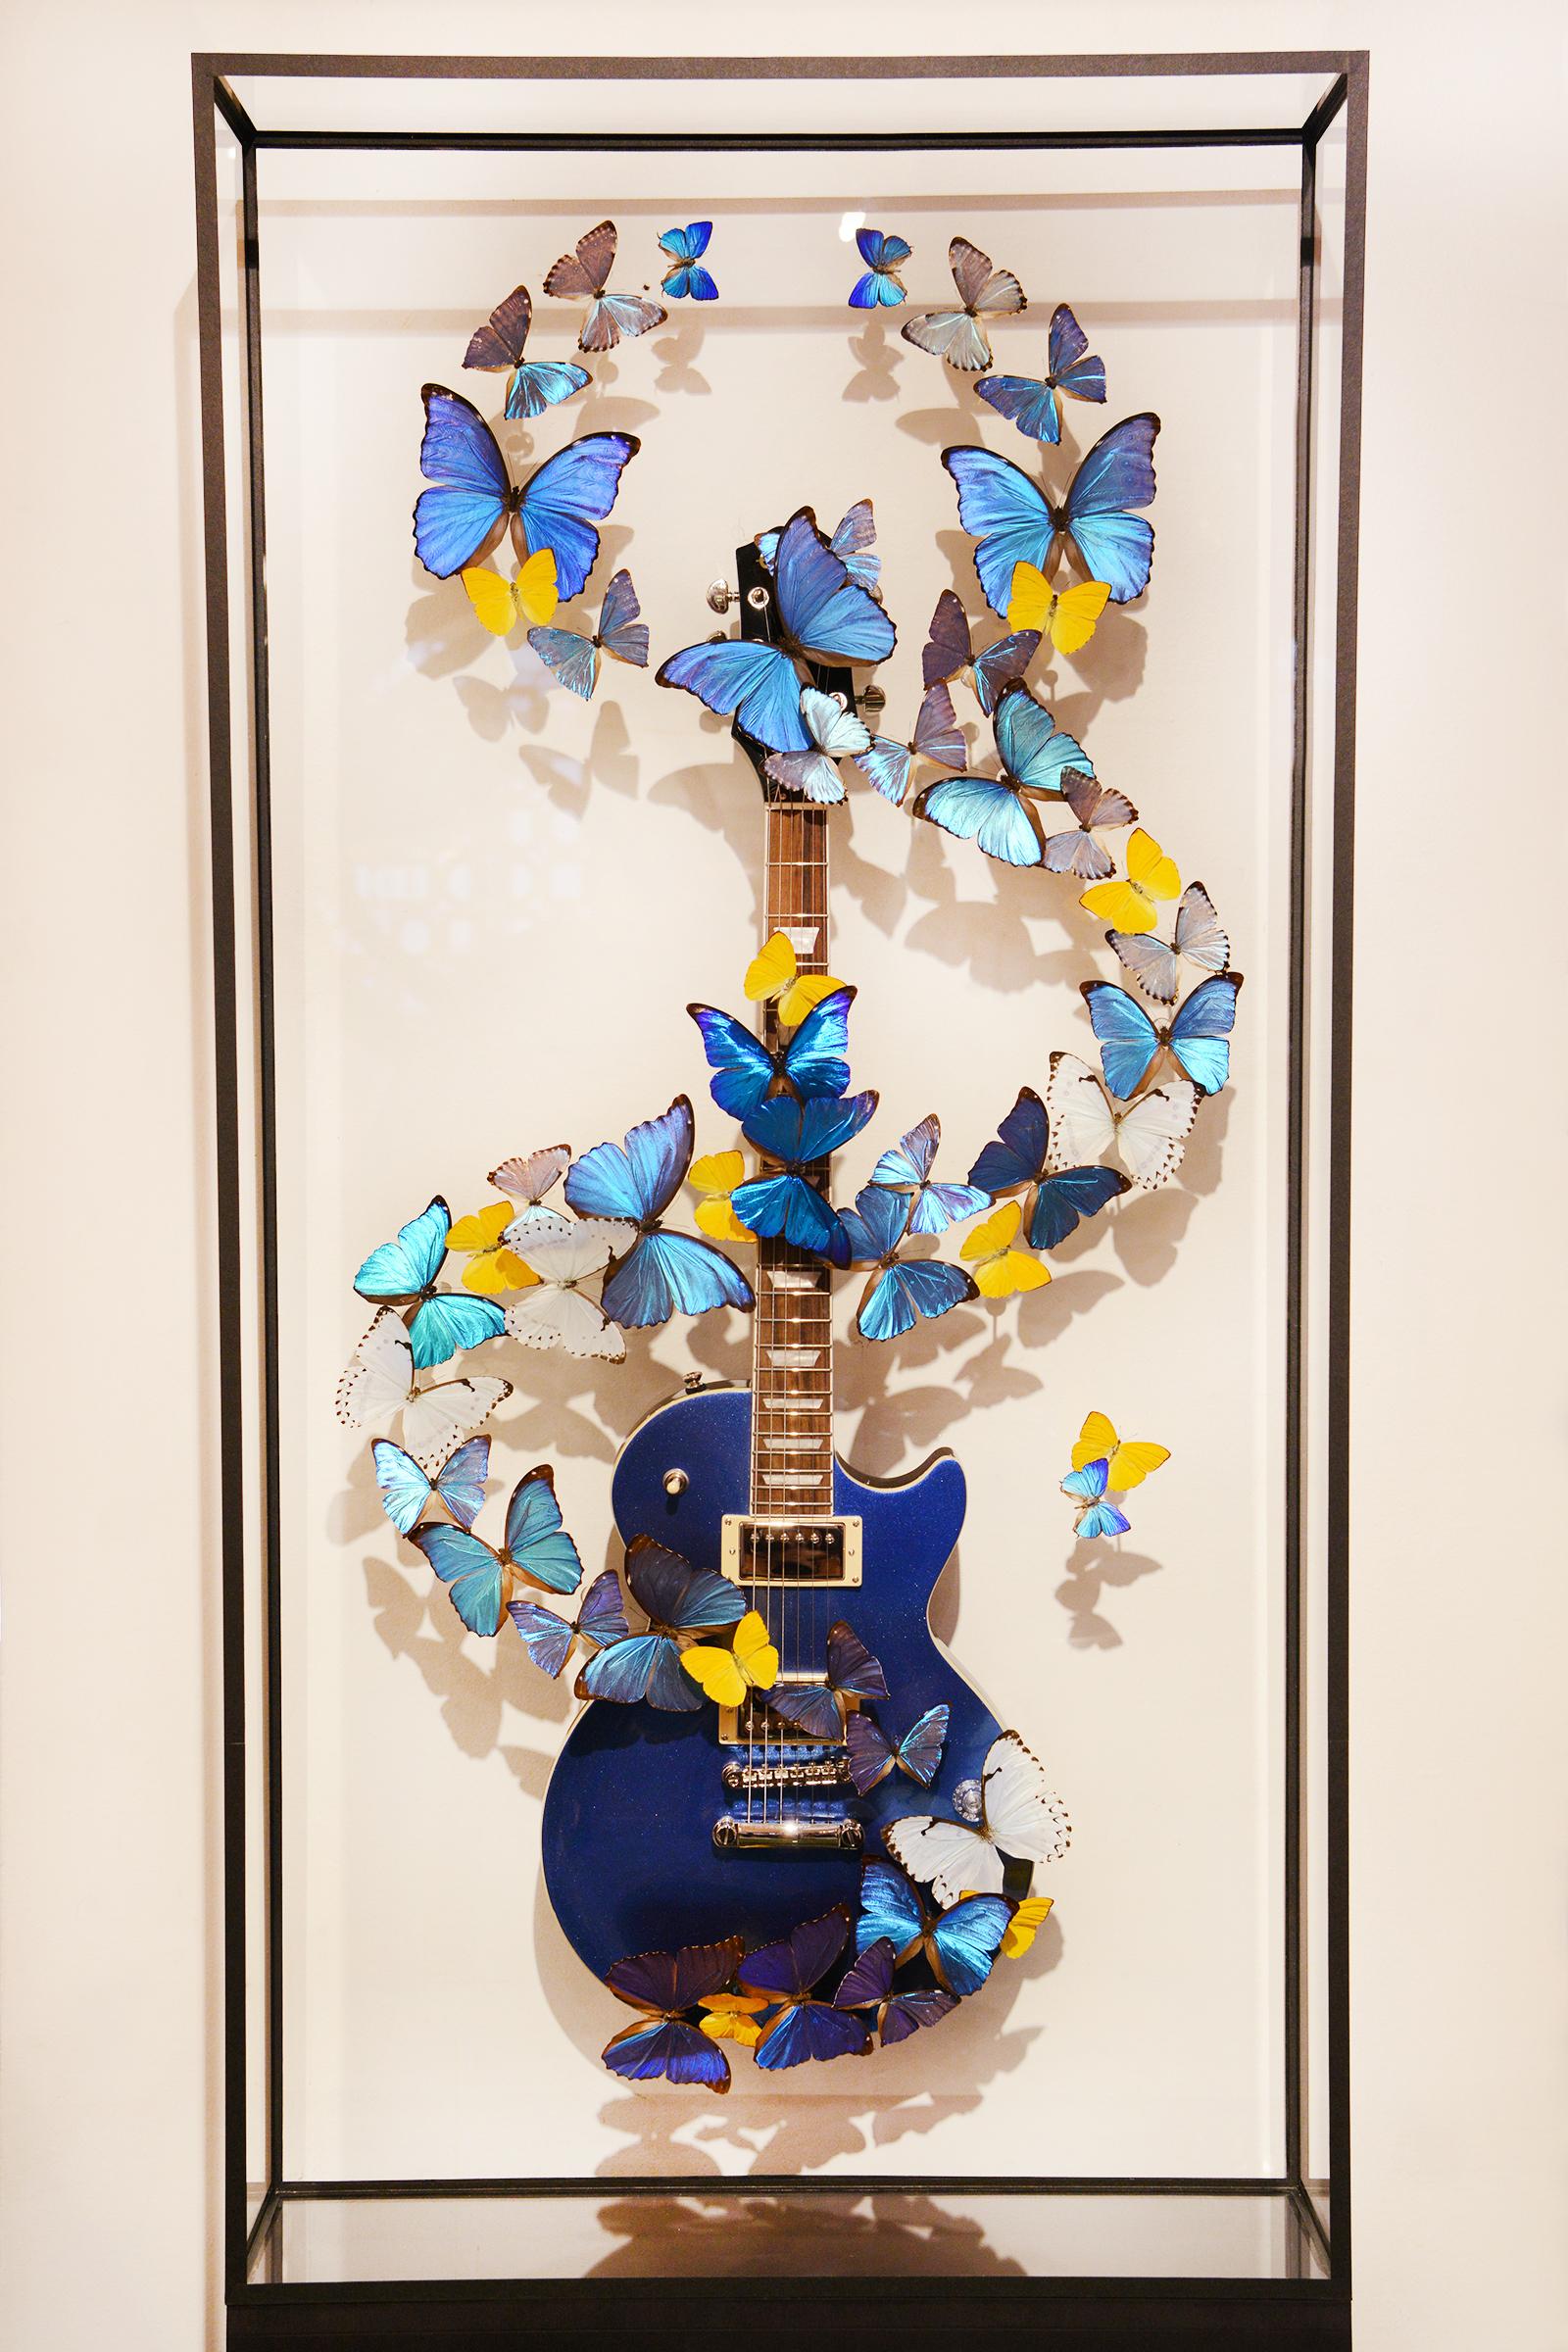 Guitare Les Paul & Papillons bleus fabriqués à partir d'une vraie guitare Epiphone Les Paul 
mise en scène avec de vrais papillons provenant d'élevages, aucune citation n'est nécessaire pour ces papillons.
Œuvre d'art sous cadre en verre sur base de